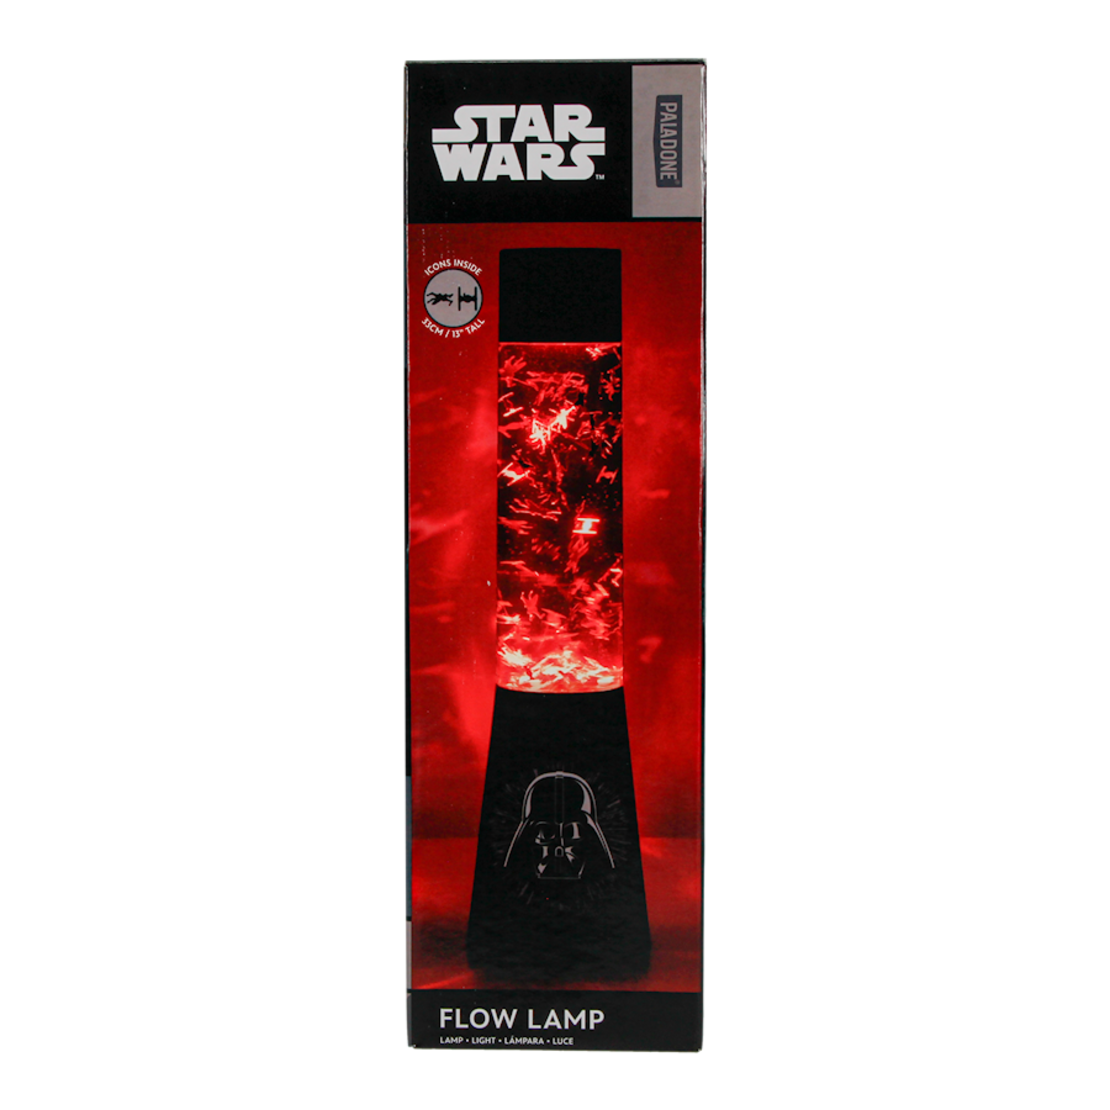 Star Wars - Darth Vader лампа 35 см. 